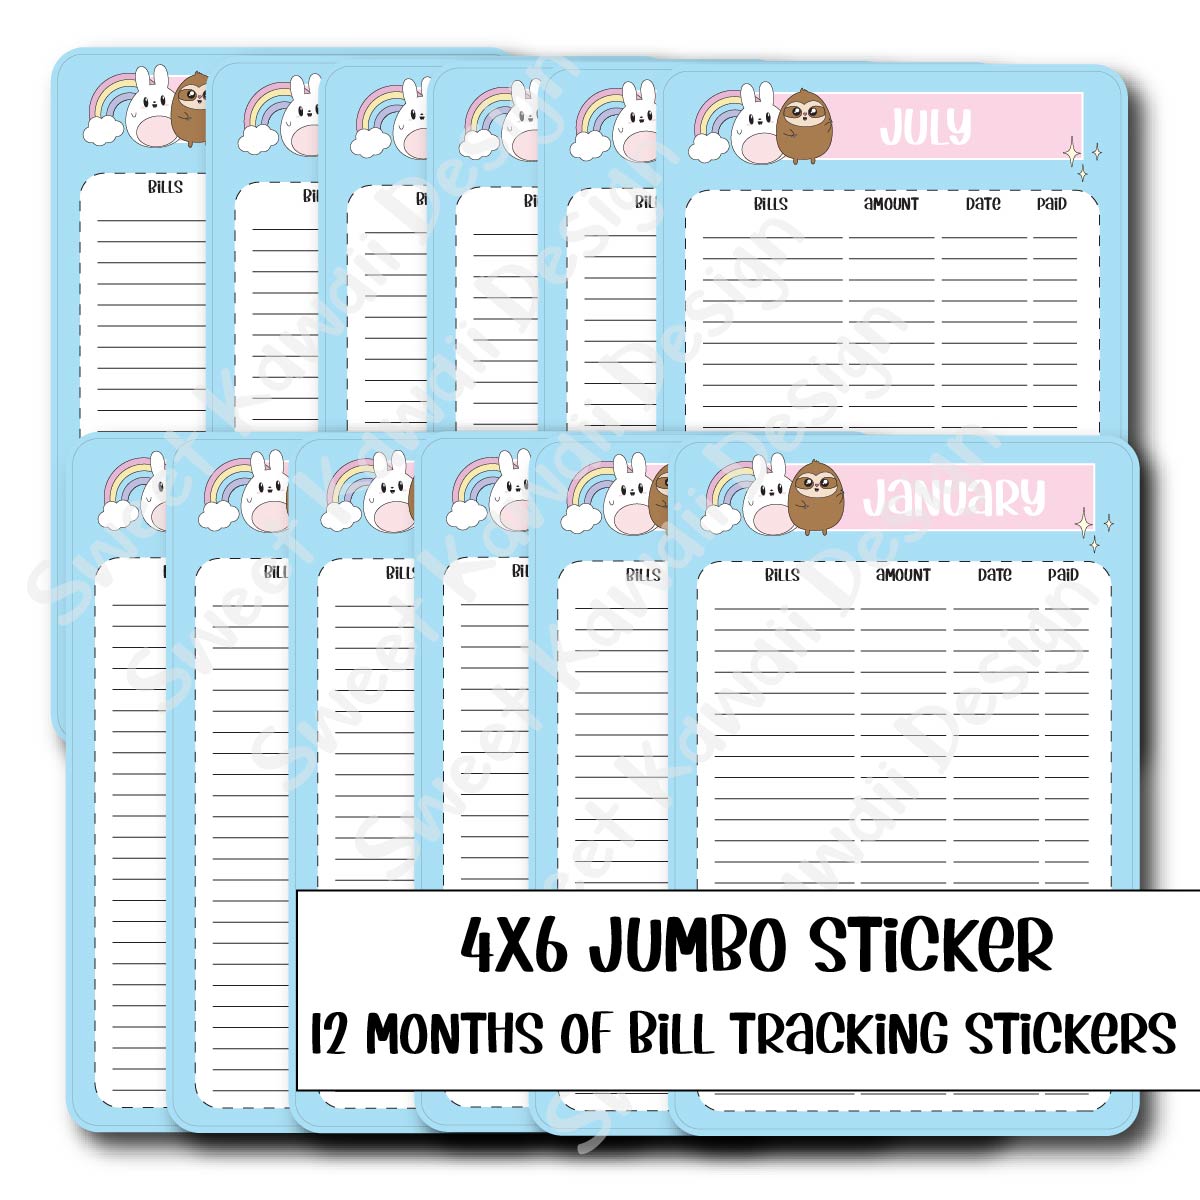 4x6 Jumbo Sticker Kit - Bill Tracker